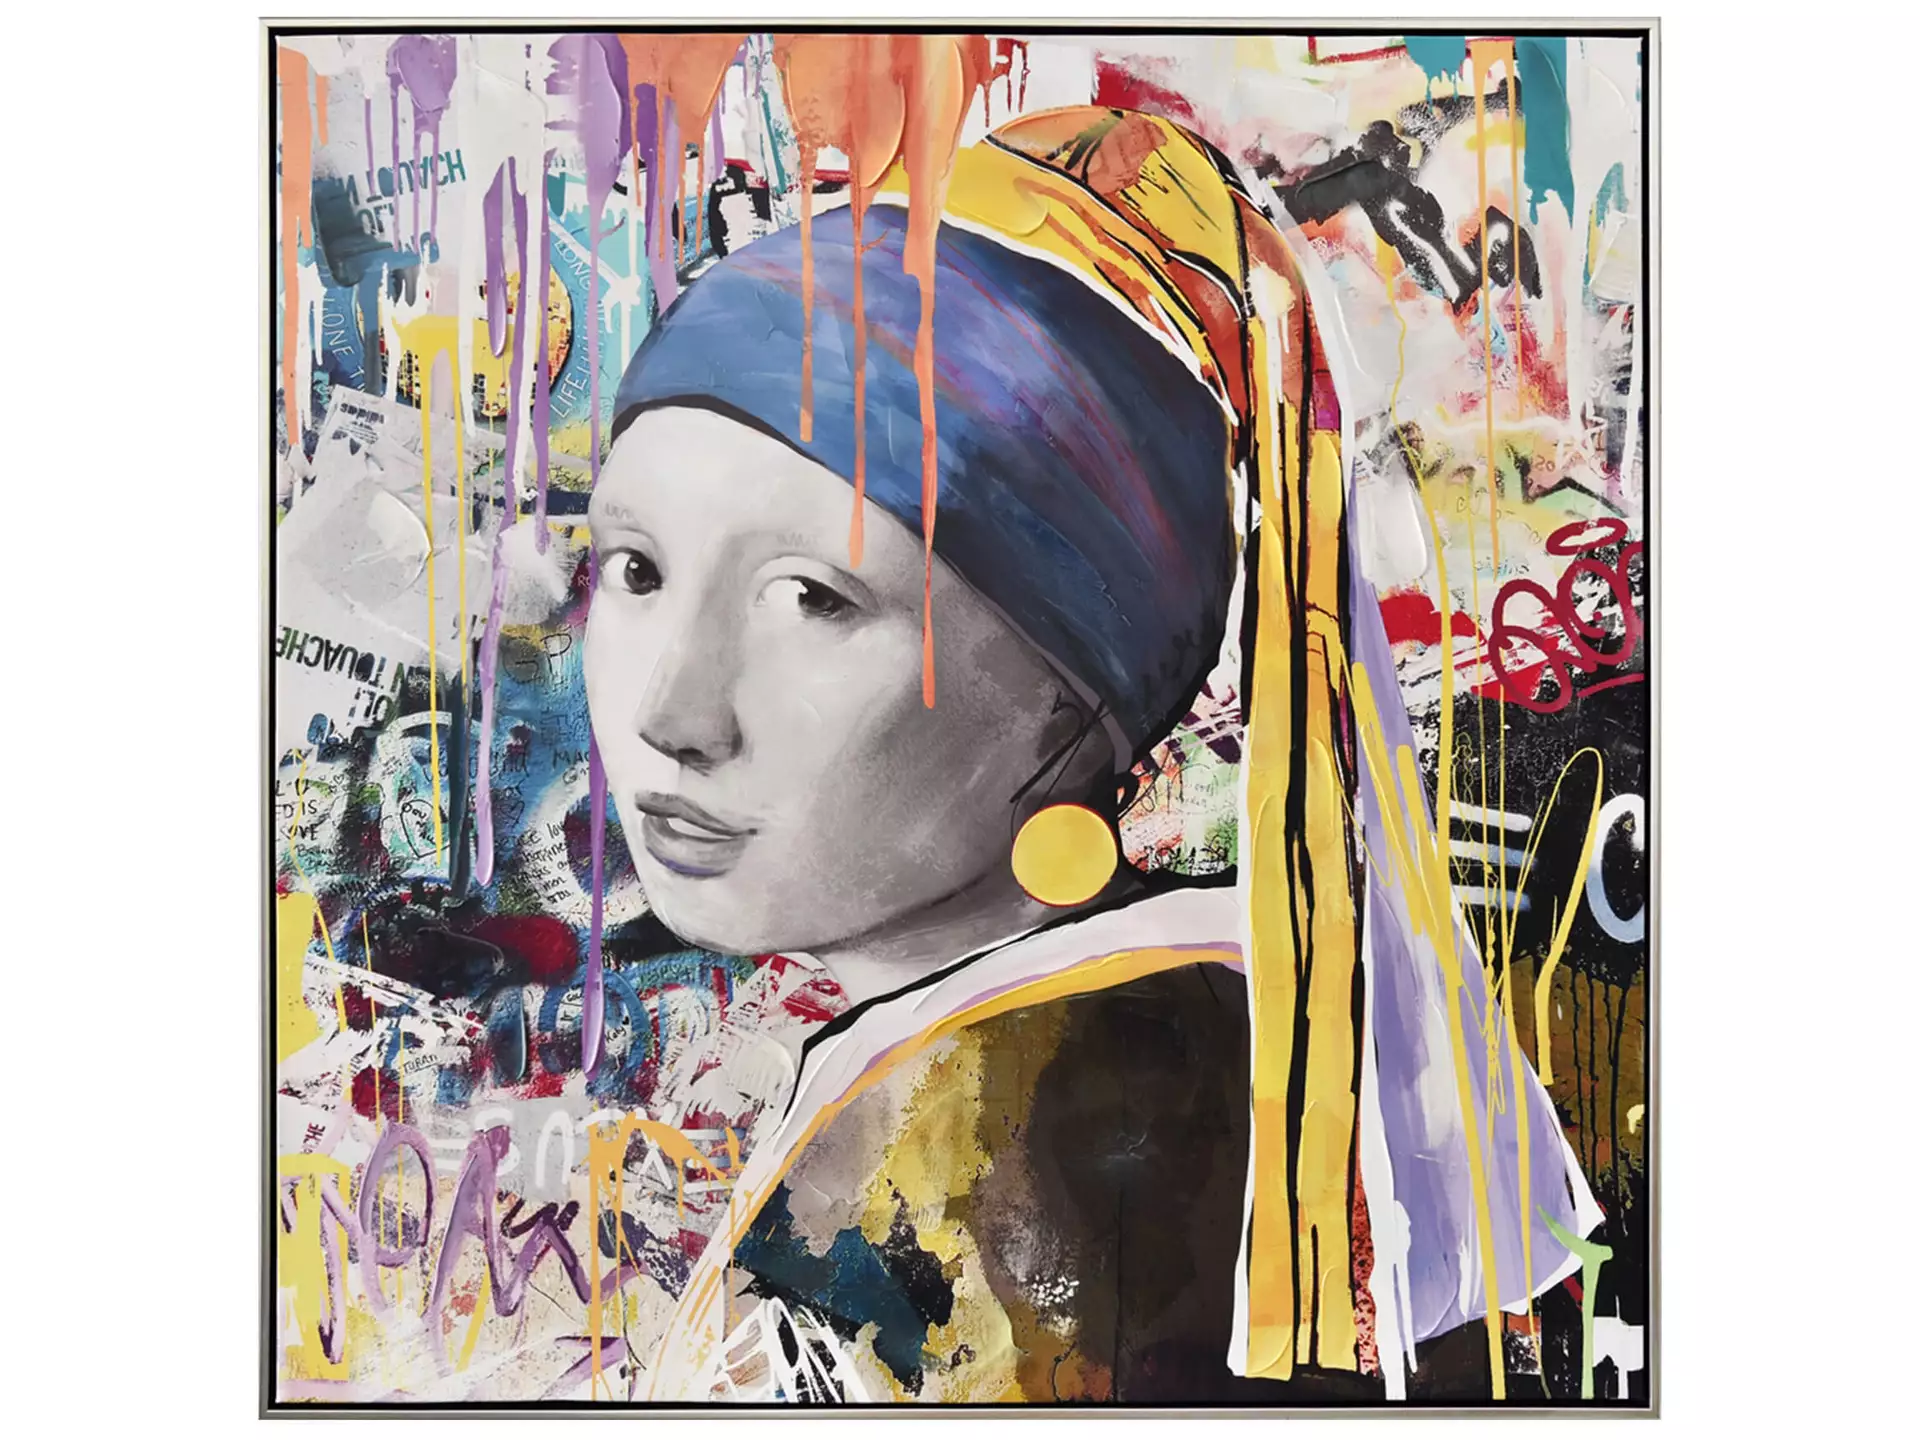 Bild Street Art Perlen-Mädchen image LAND / Grösse: 103 x 103 cm